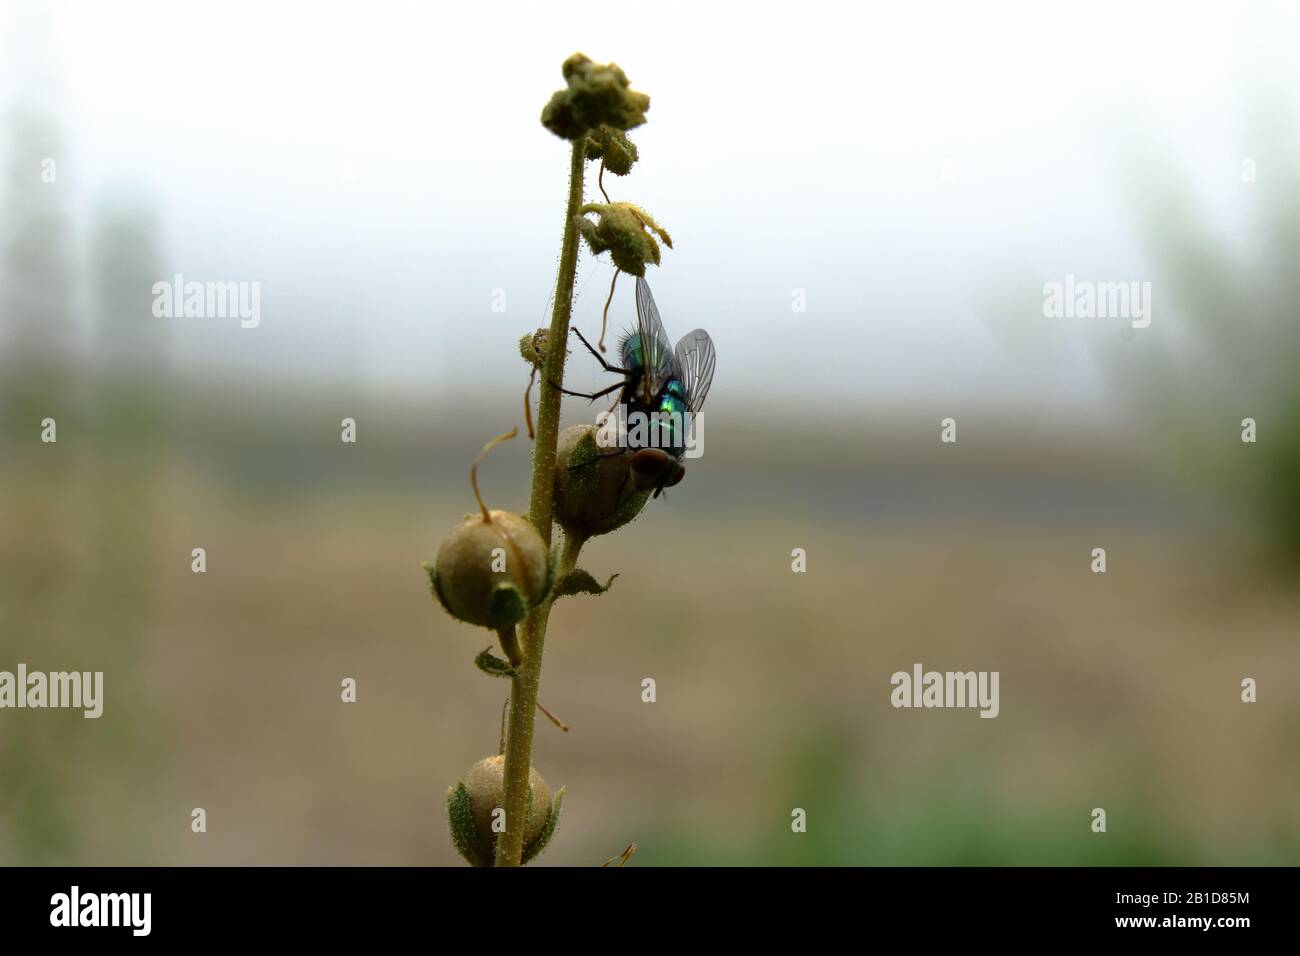 Common, Green bottle fly resting on flower stem. Stock Photo